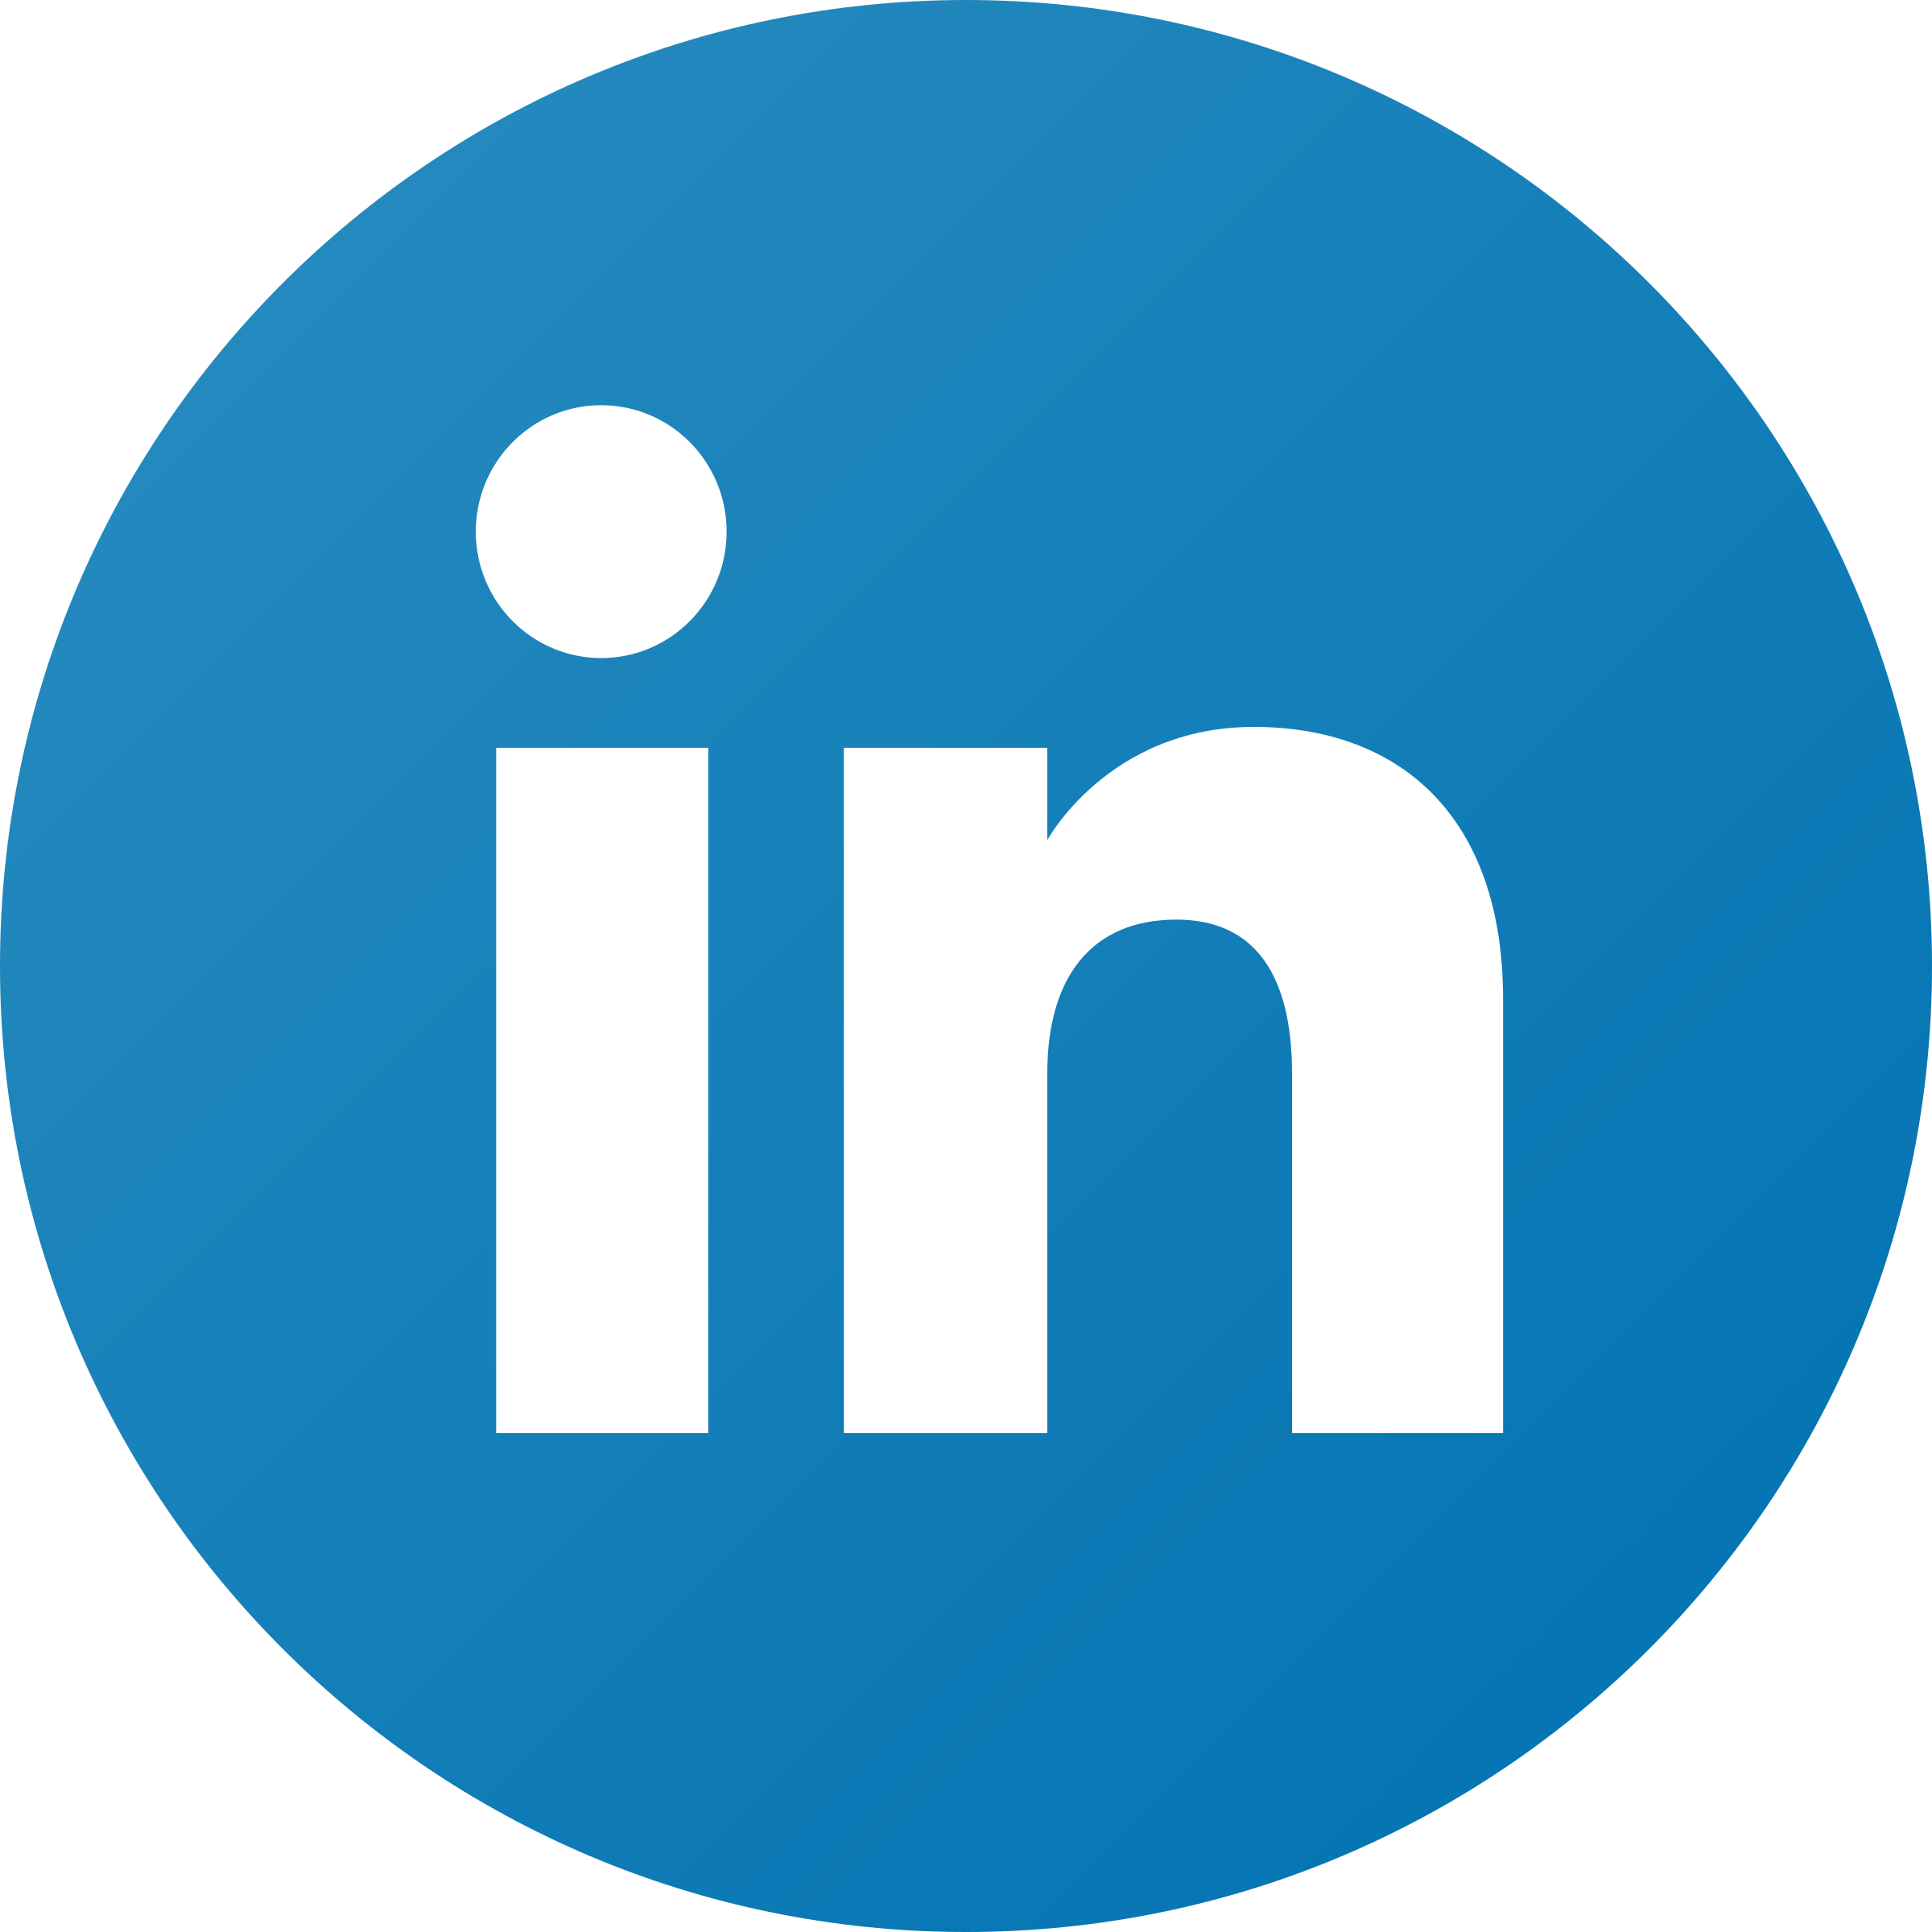 Linkdln Logo - LinkedIn icon Logo PNG Transparent & SVG Vector - Freebie Supply